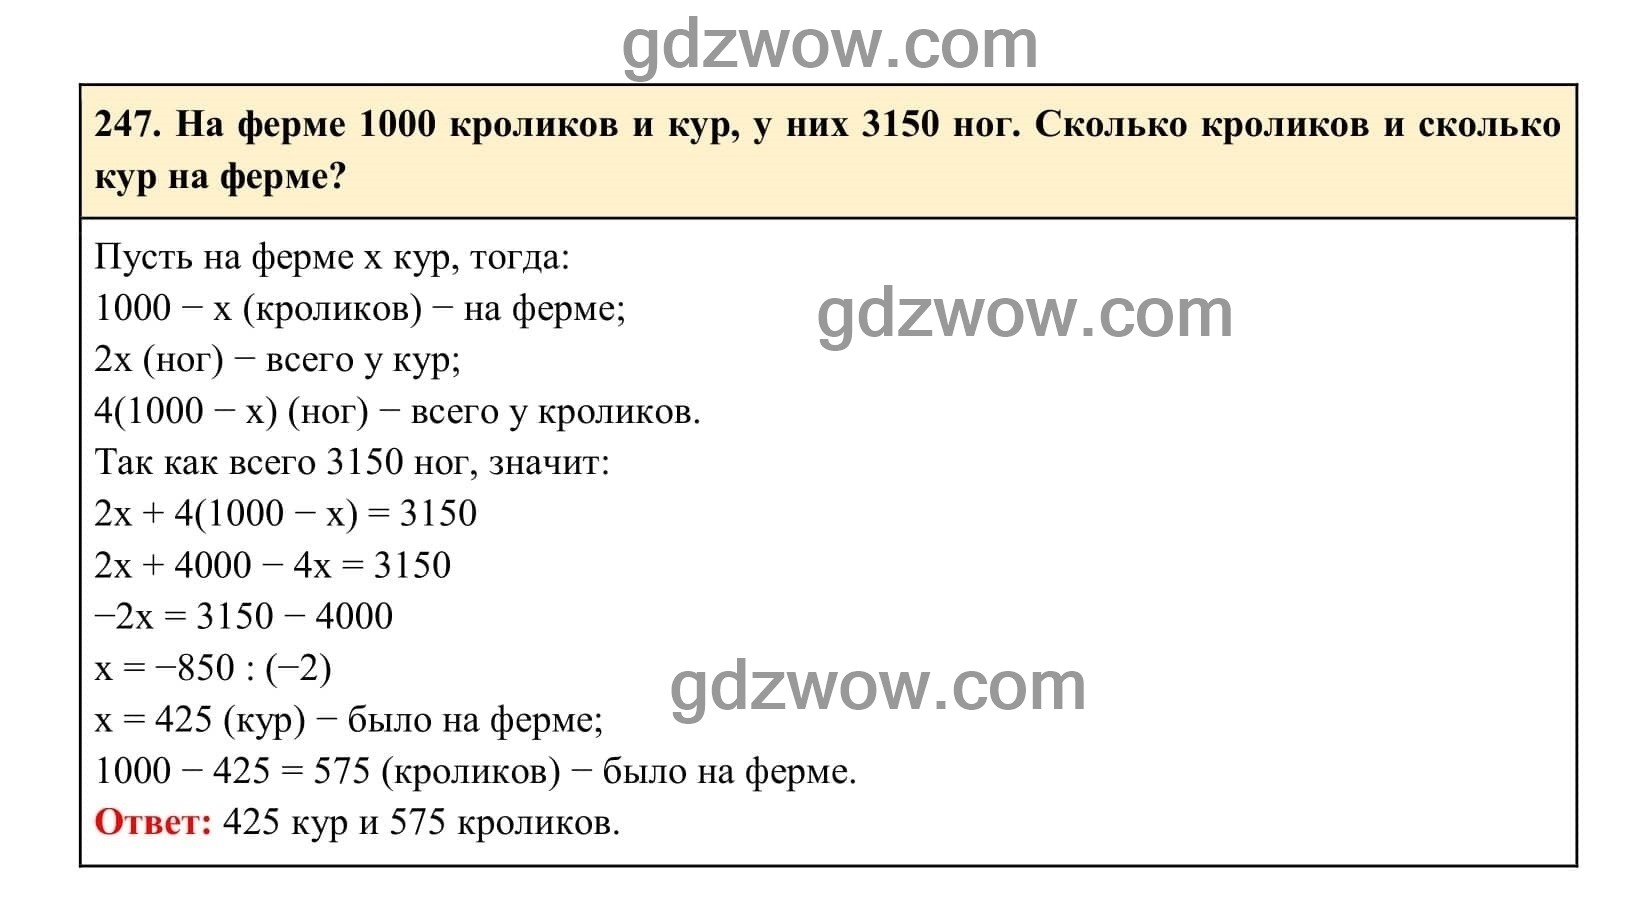 Упражнение 247 - ГДЗ по Алгебре 7 класс Учебник Макарычев (решебник) - GDZwow